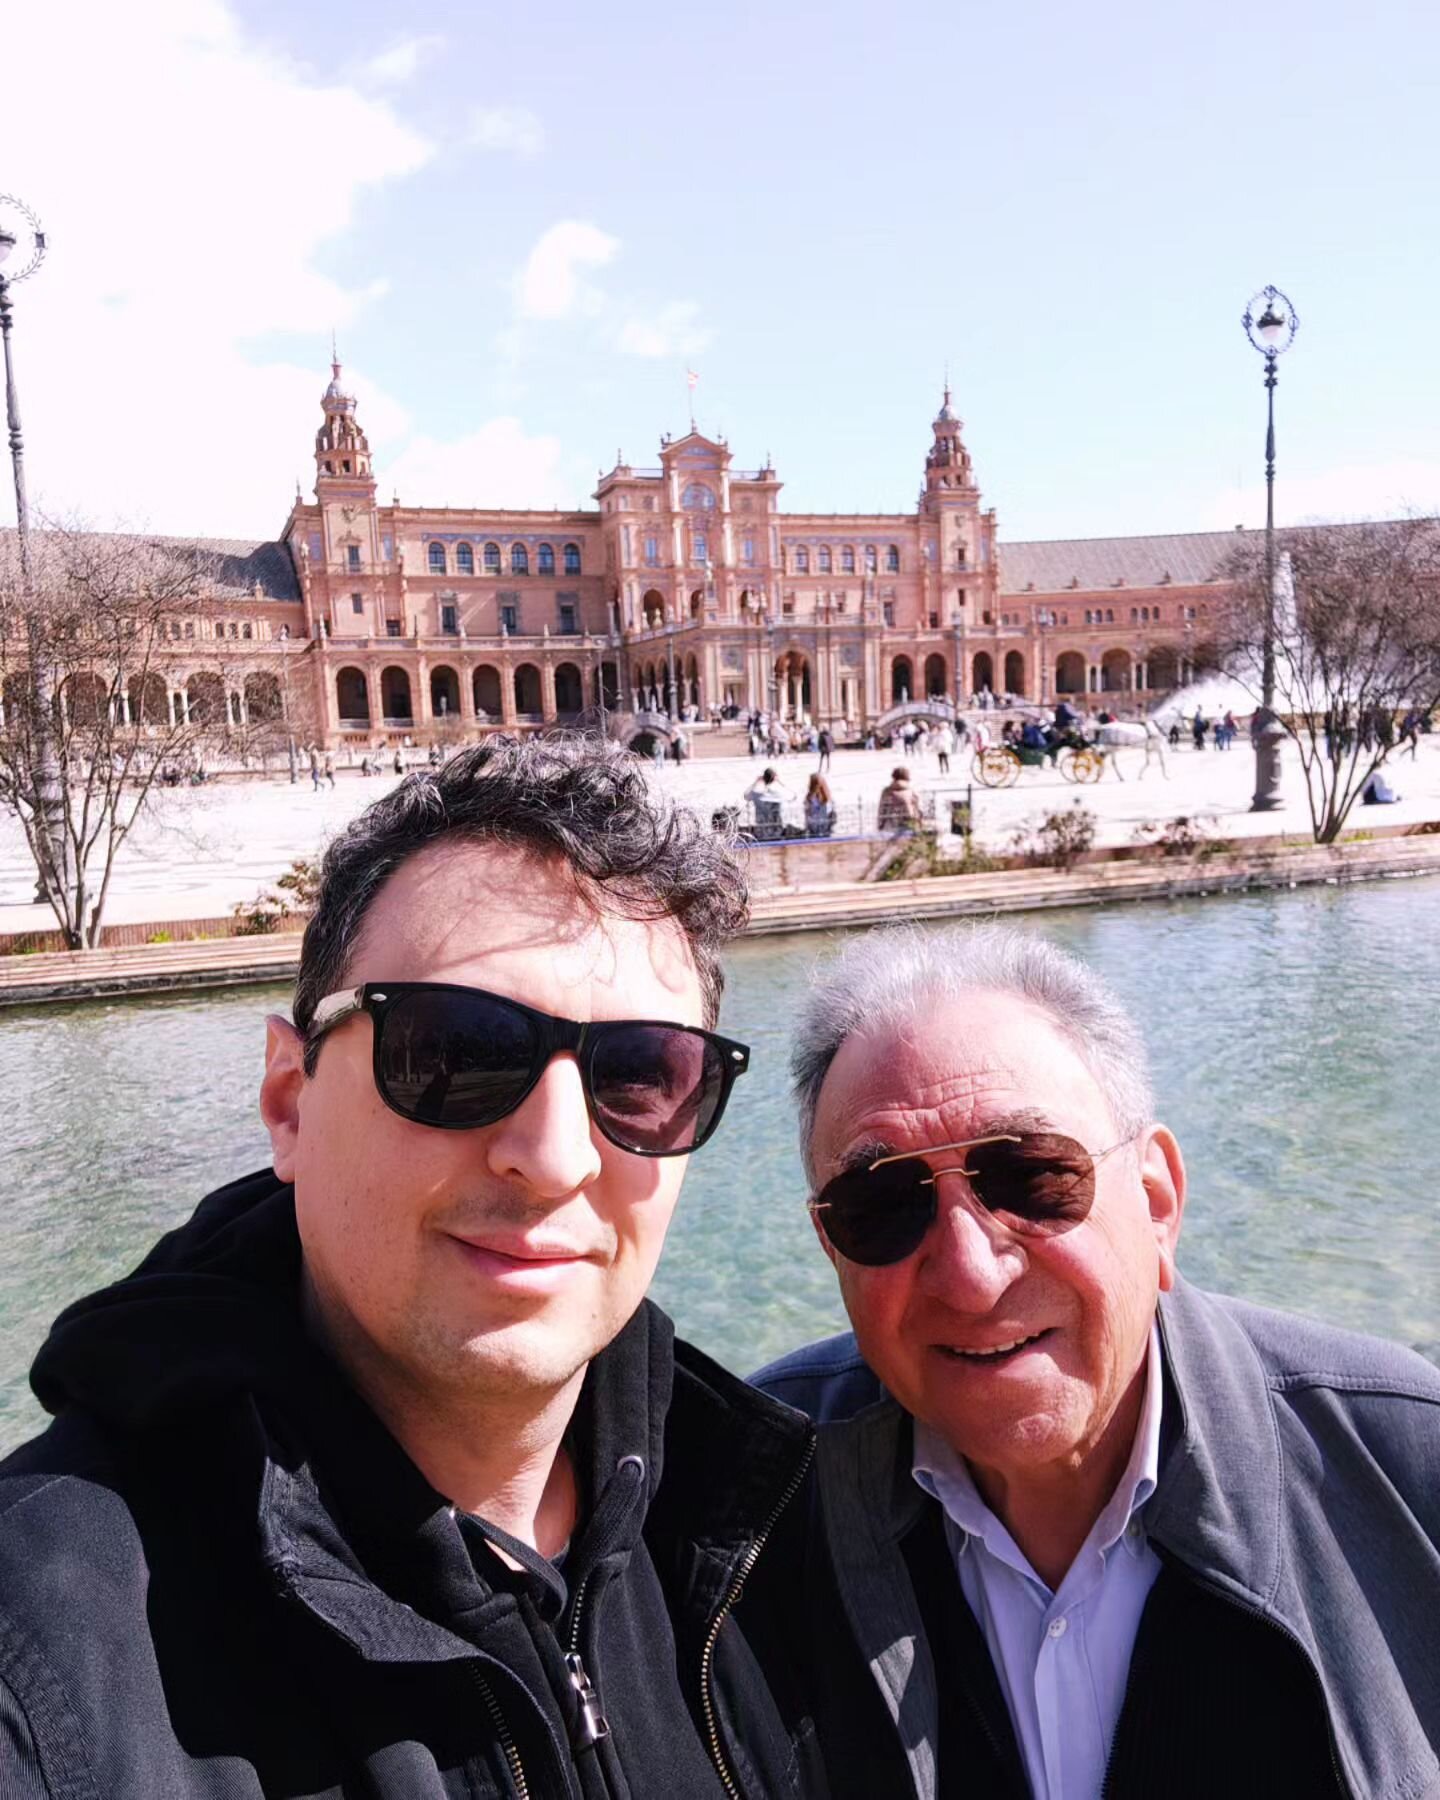 A Siviglia con mio padre, che vince una medaglia per avermi sopportato per quattro giorni.